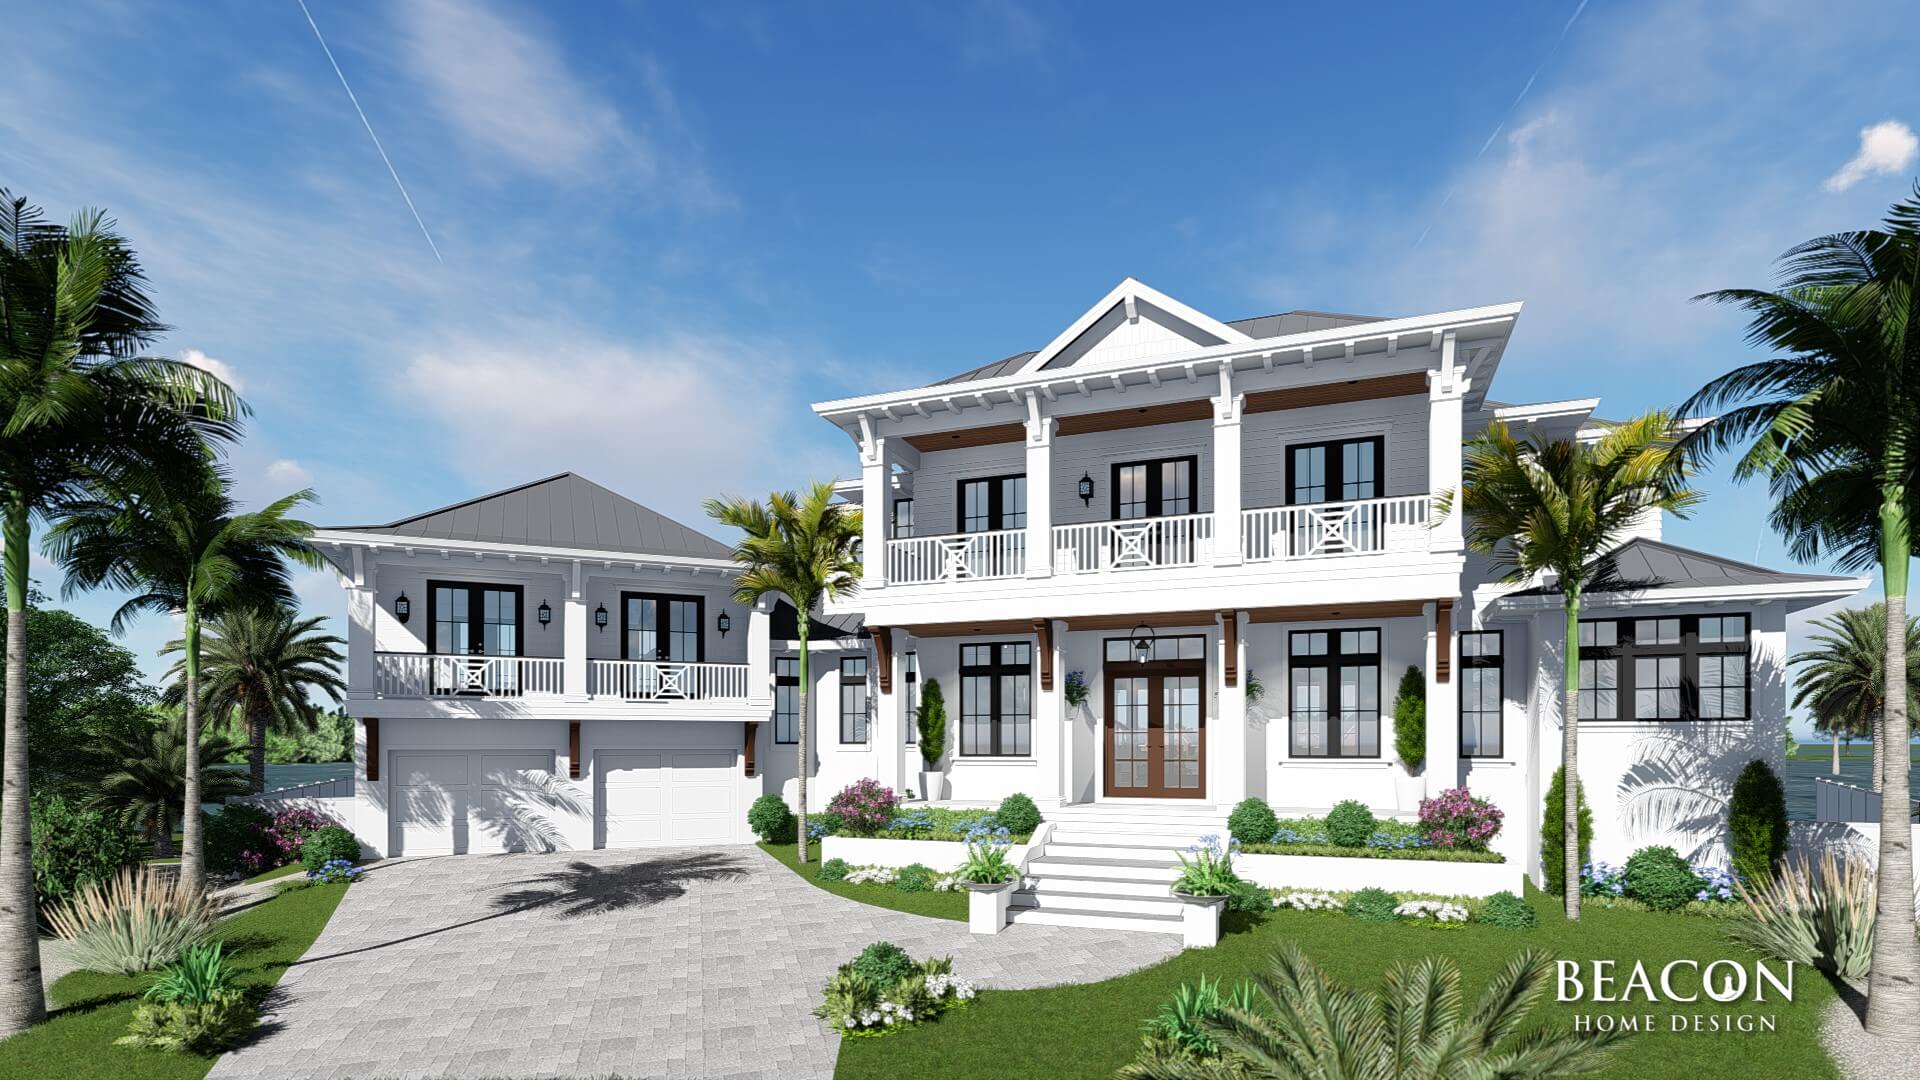 Lido Beach Custom Home Design